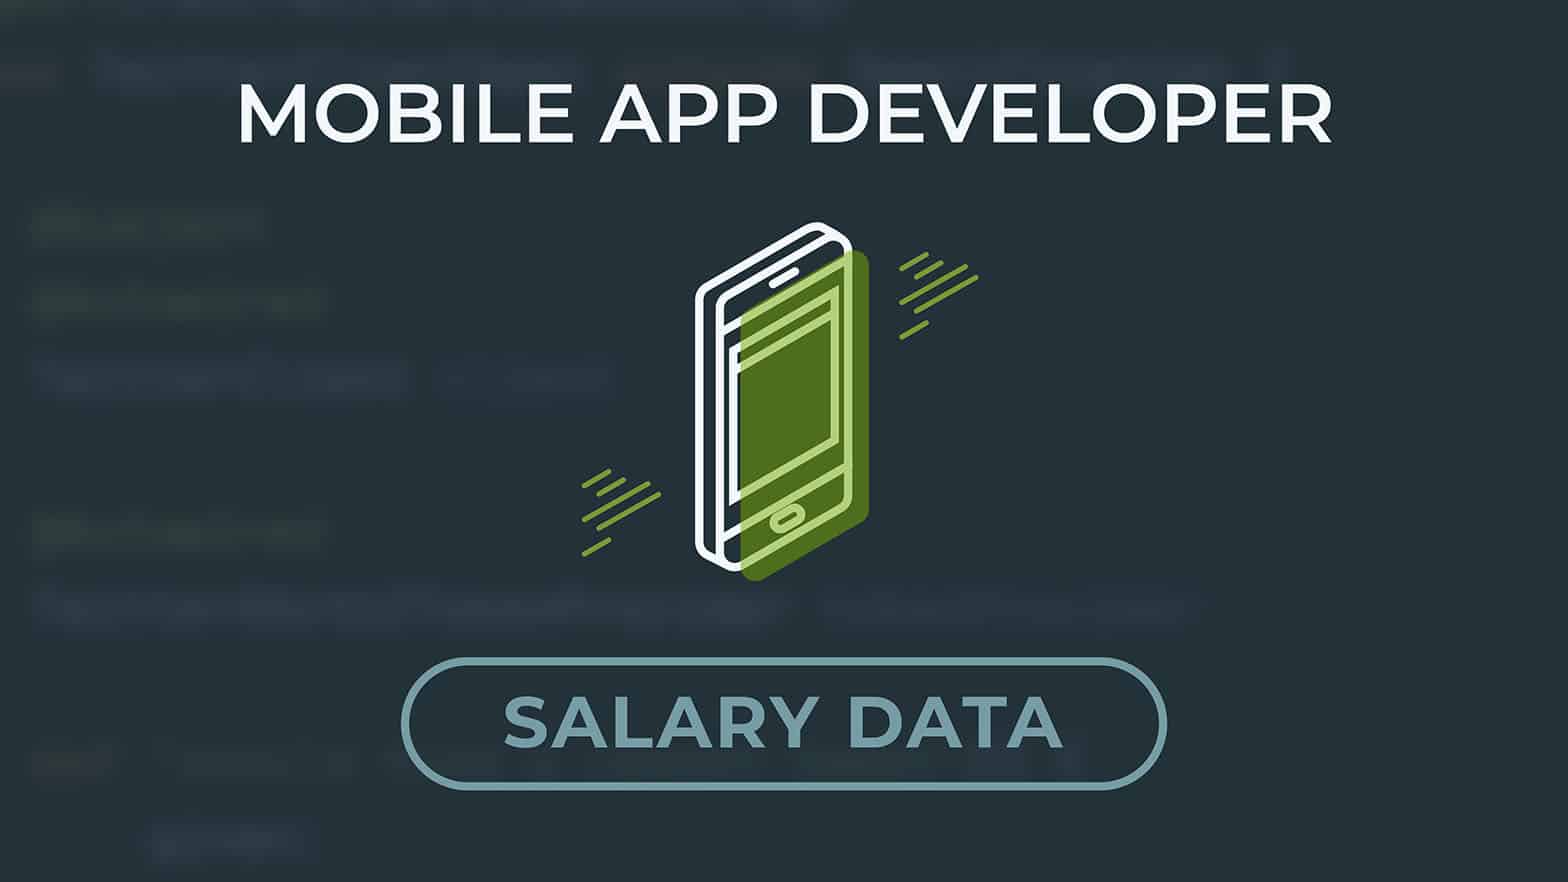 Mobile app developer salary